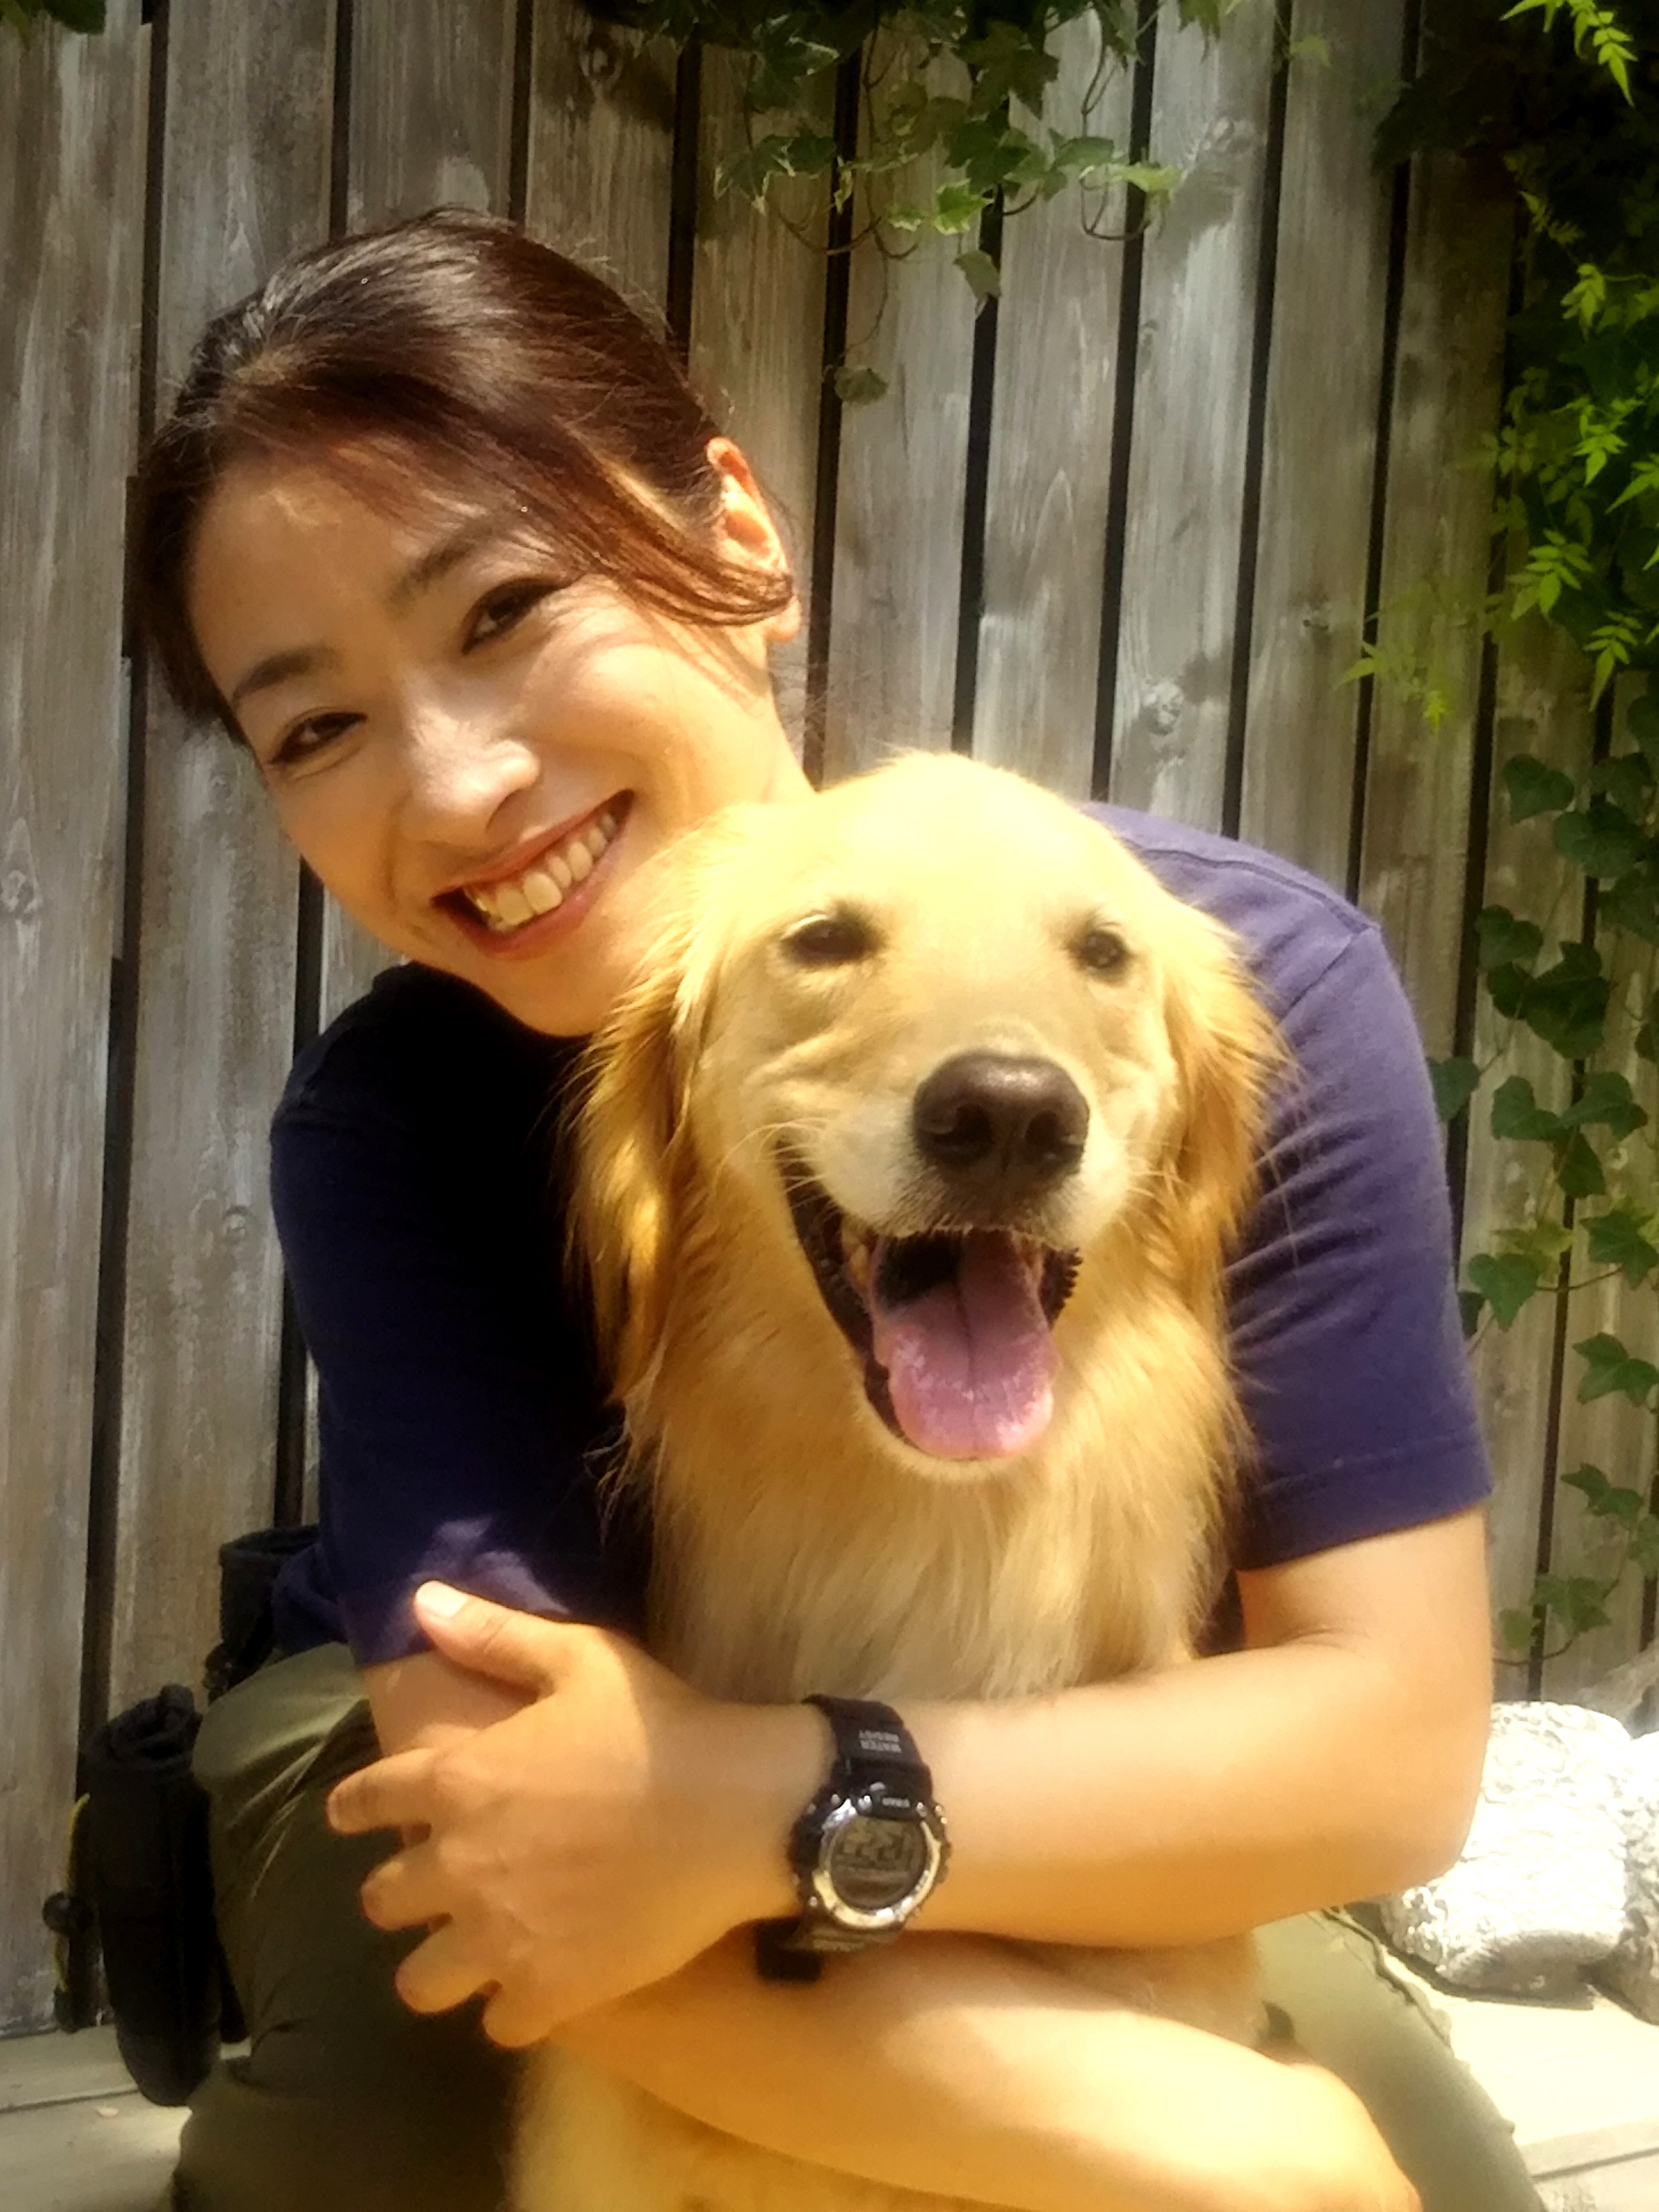 災害救助犬を育てる「日本レスキュー協会」